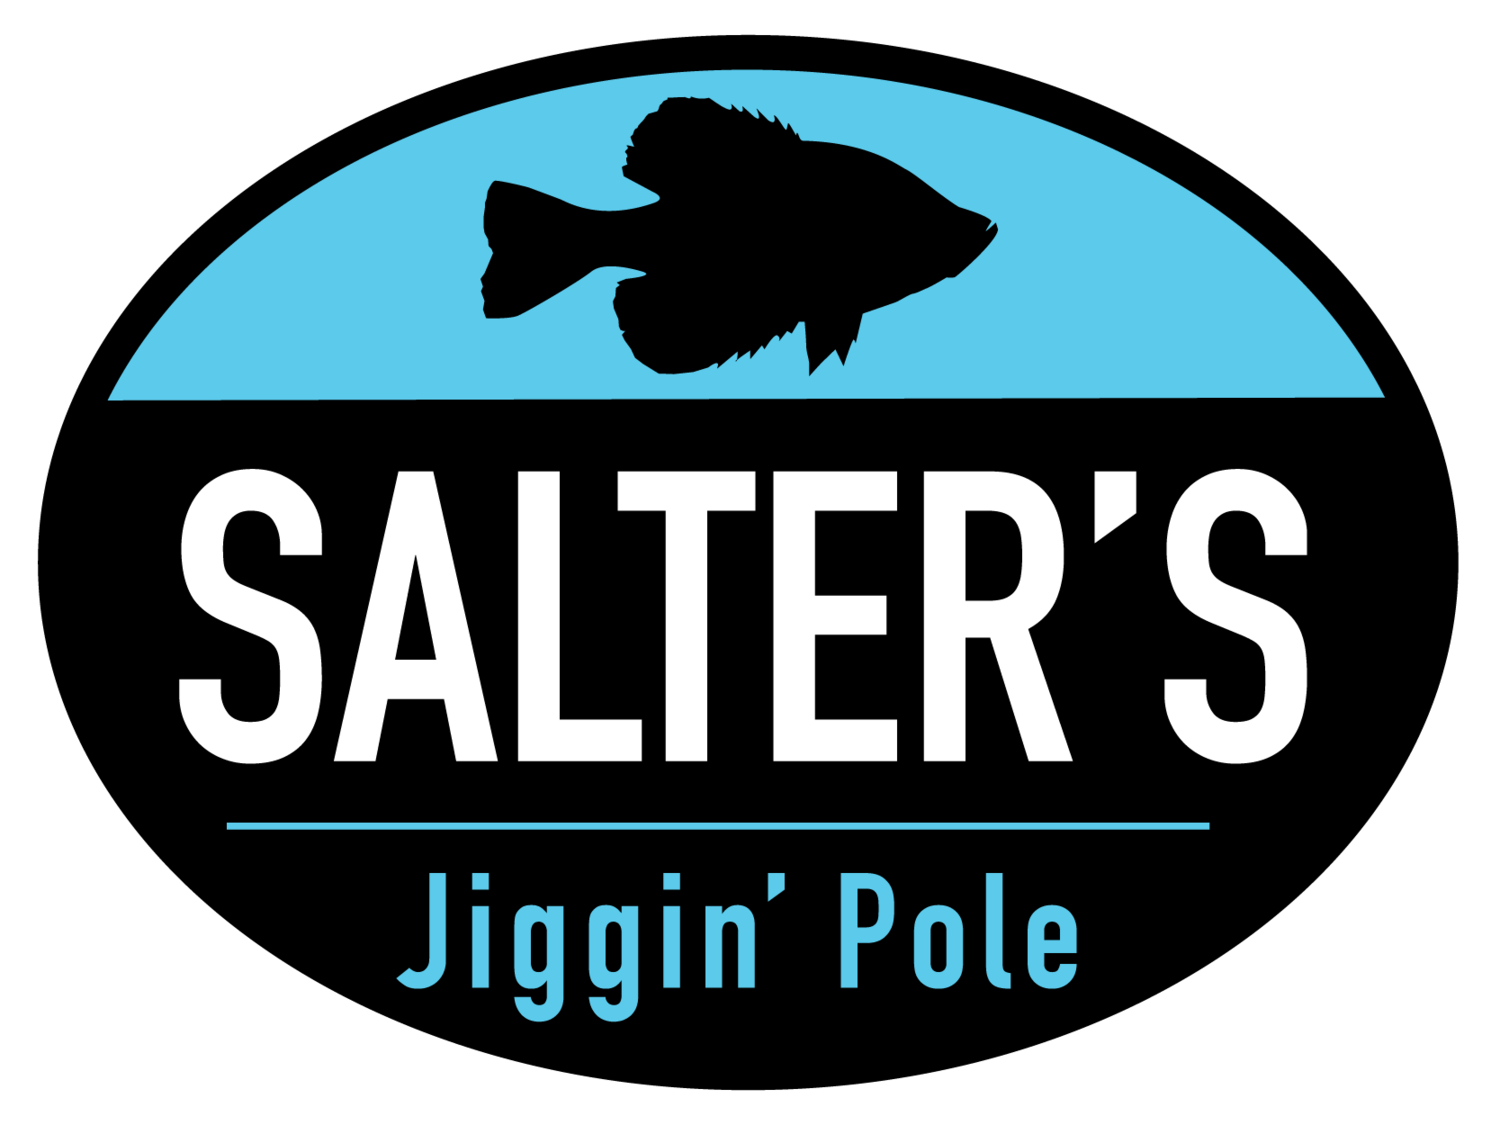 Salter's Jiggin' Pole